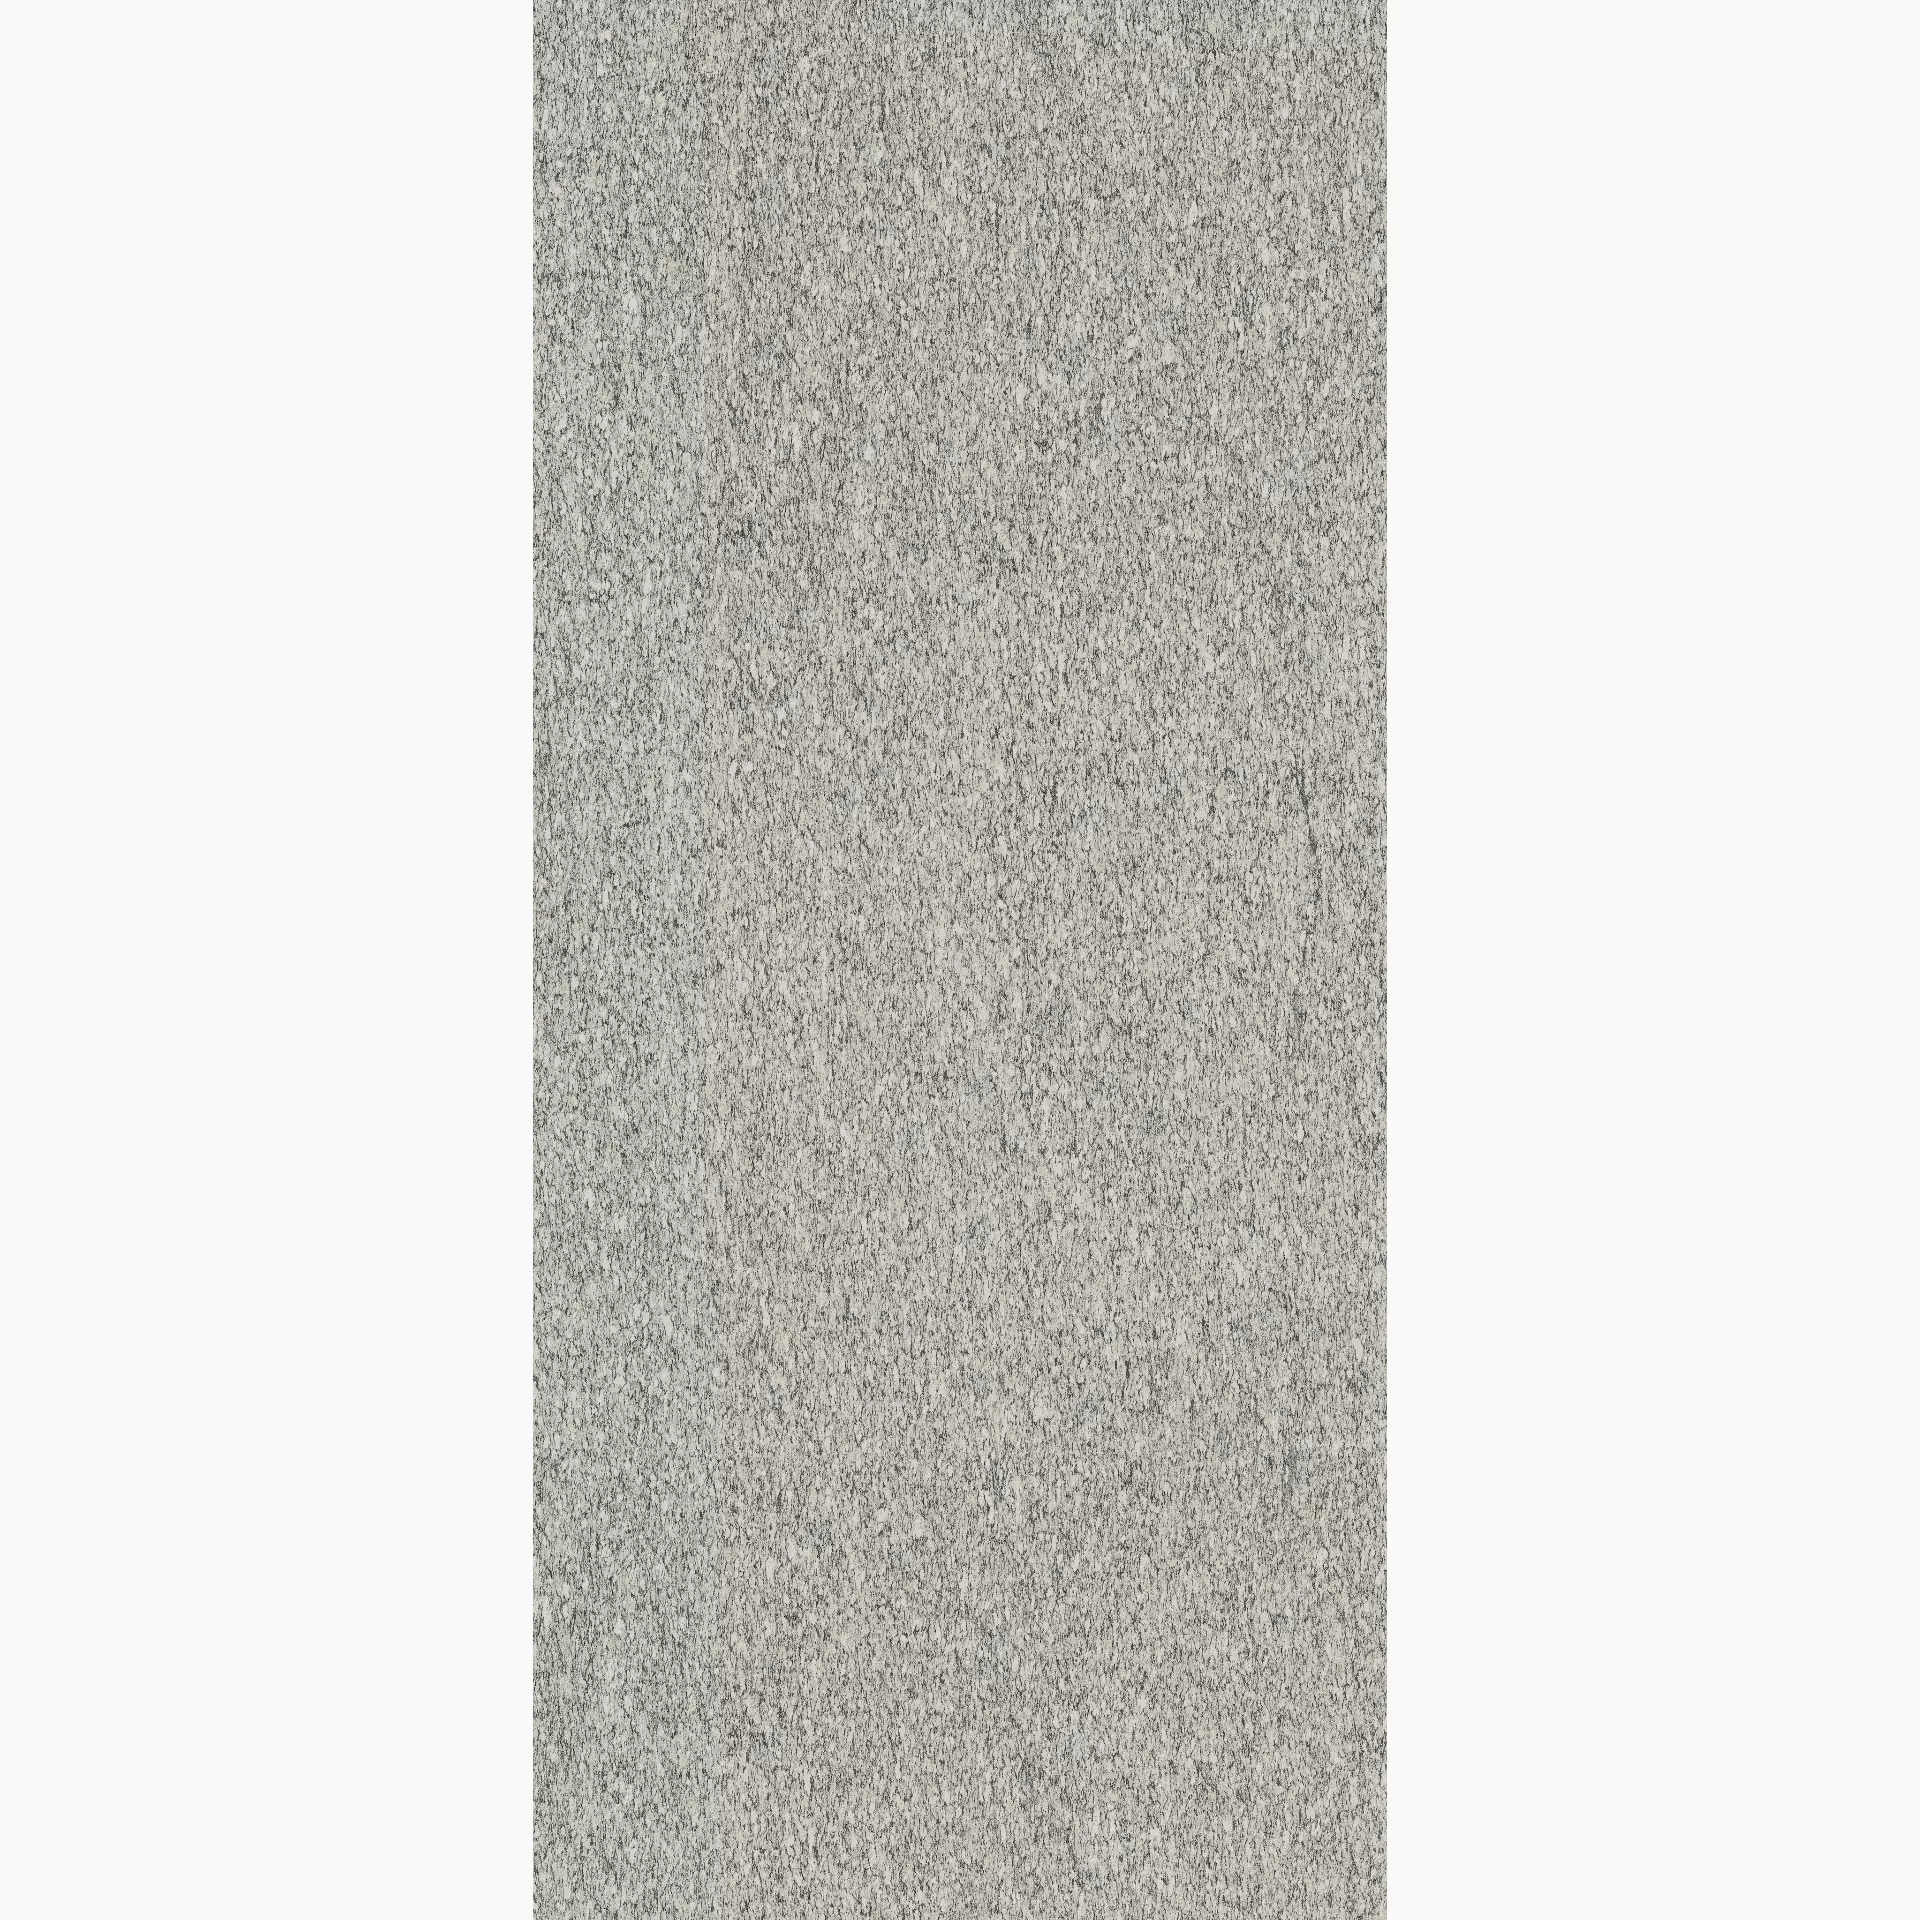 Florim Biotech Serizzo Stone Naturale – Matt Serizzo Stone 778855 matt natur 80x180cm rektifiziert 9mm